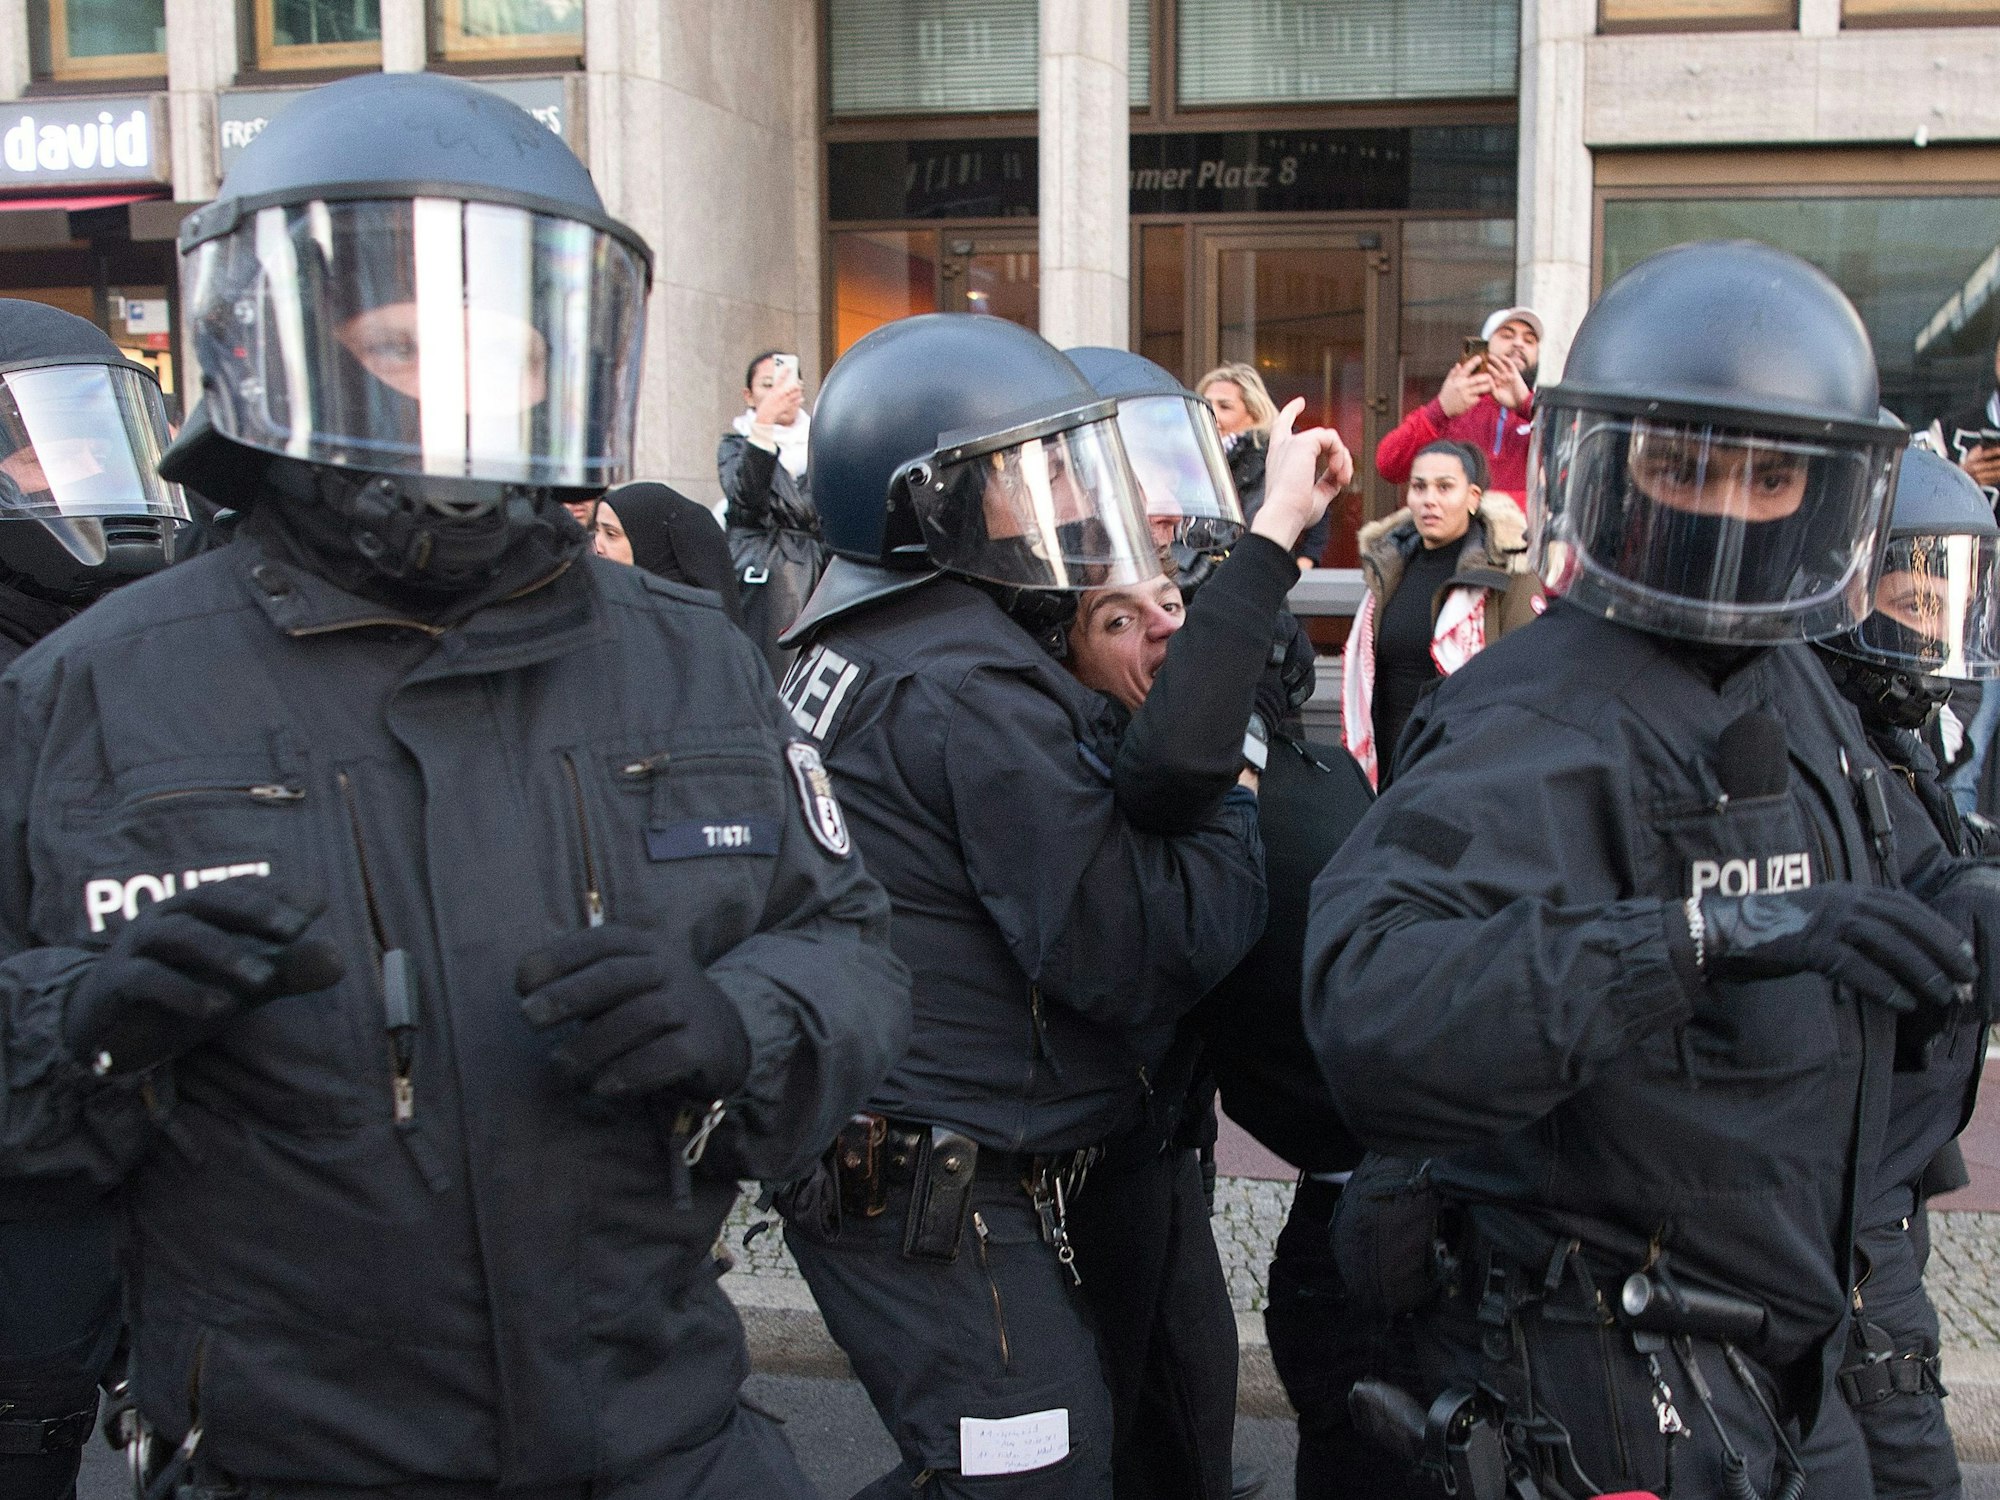 Polizisten sind bei einer verbotenen Pro-Palästina-Demonstration am Potsdamer Platz im Einsatz und nehmen eine Person fest.